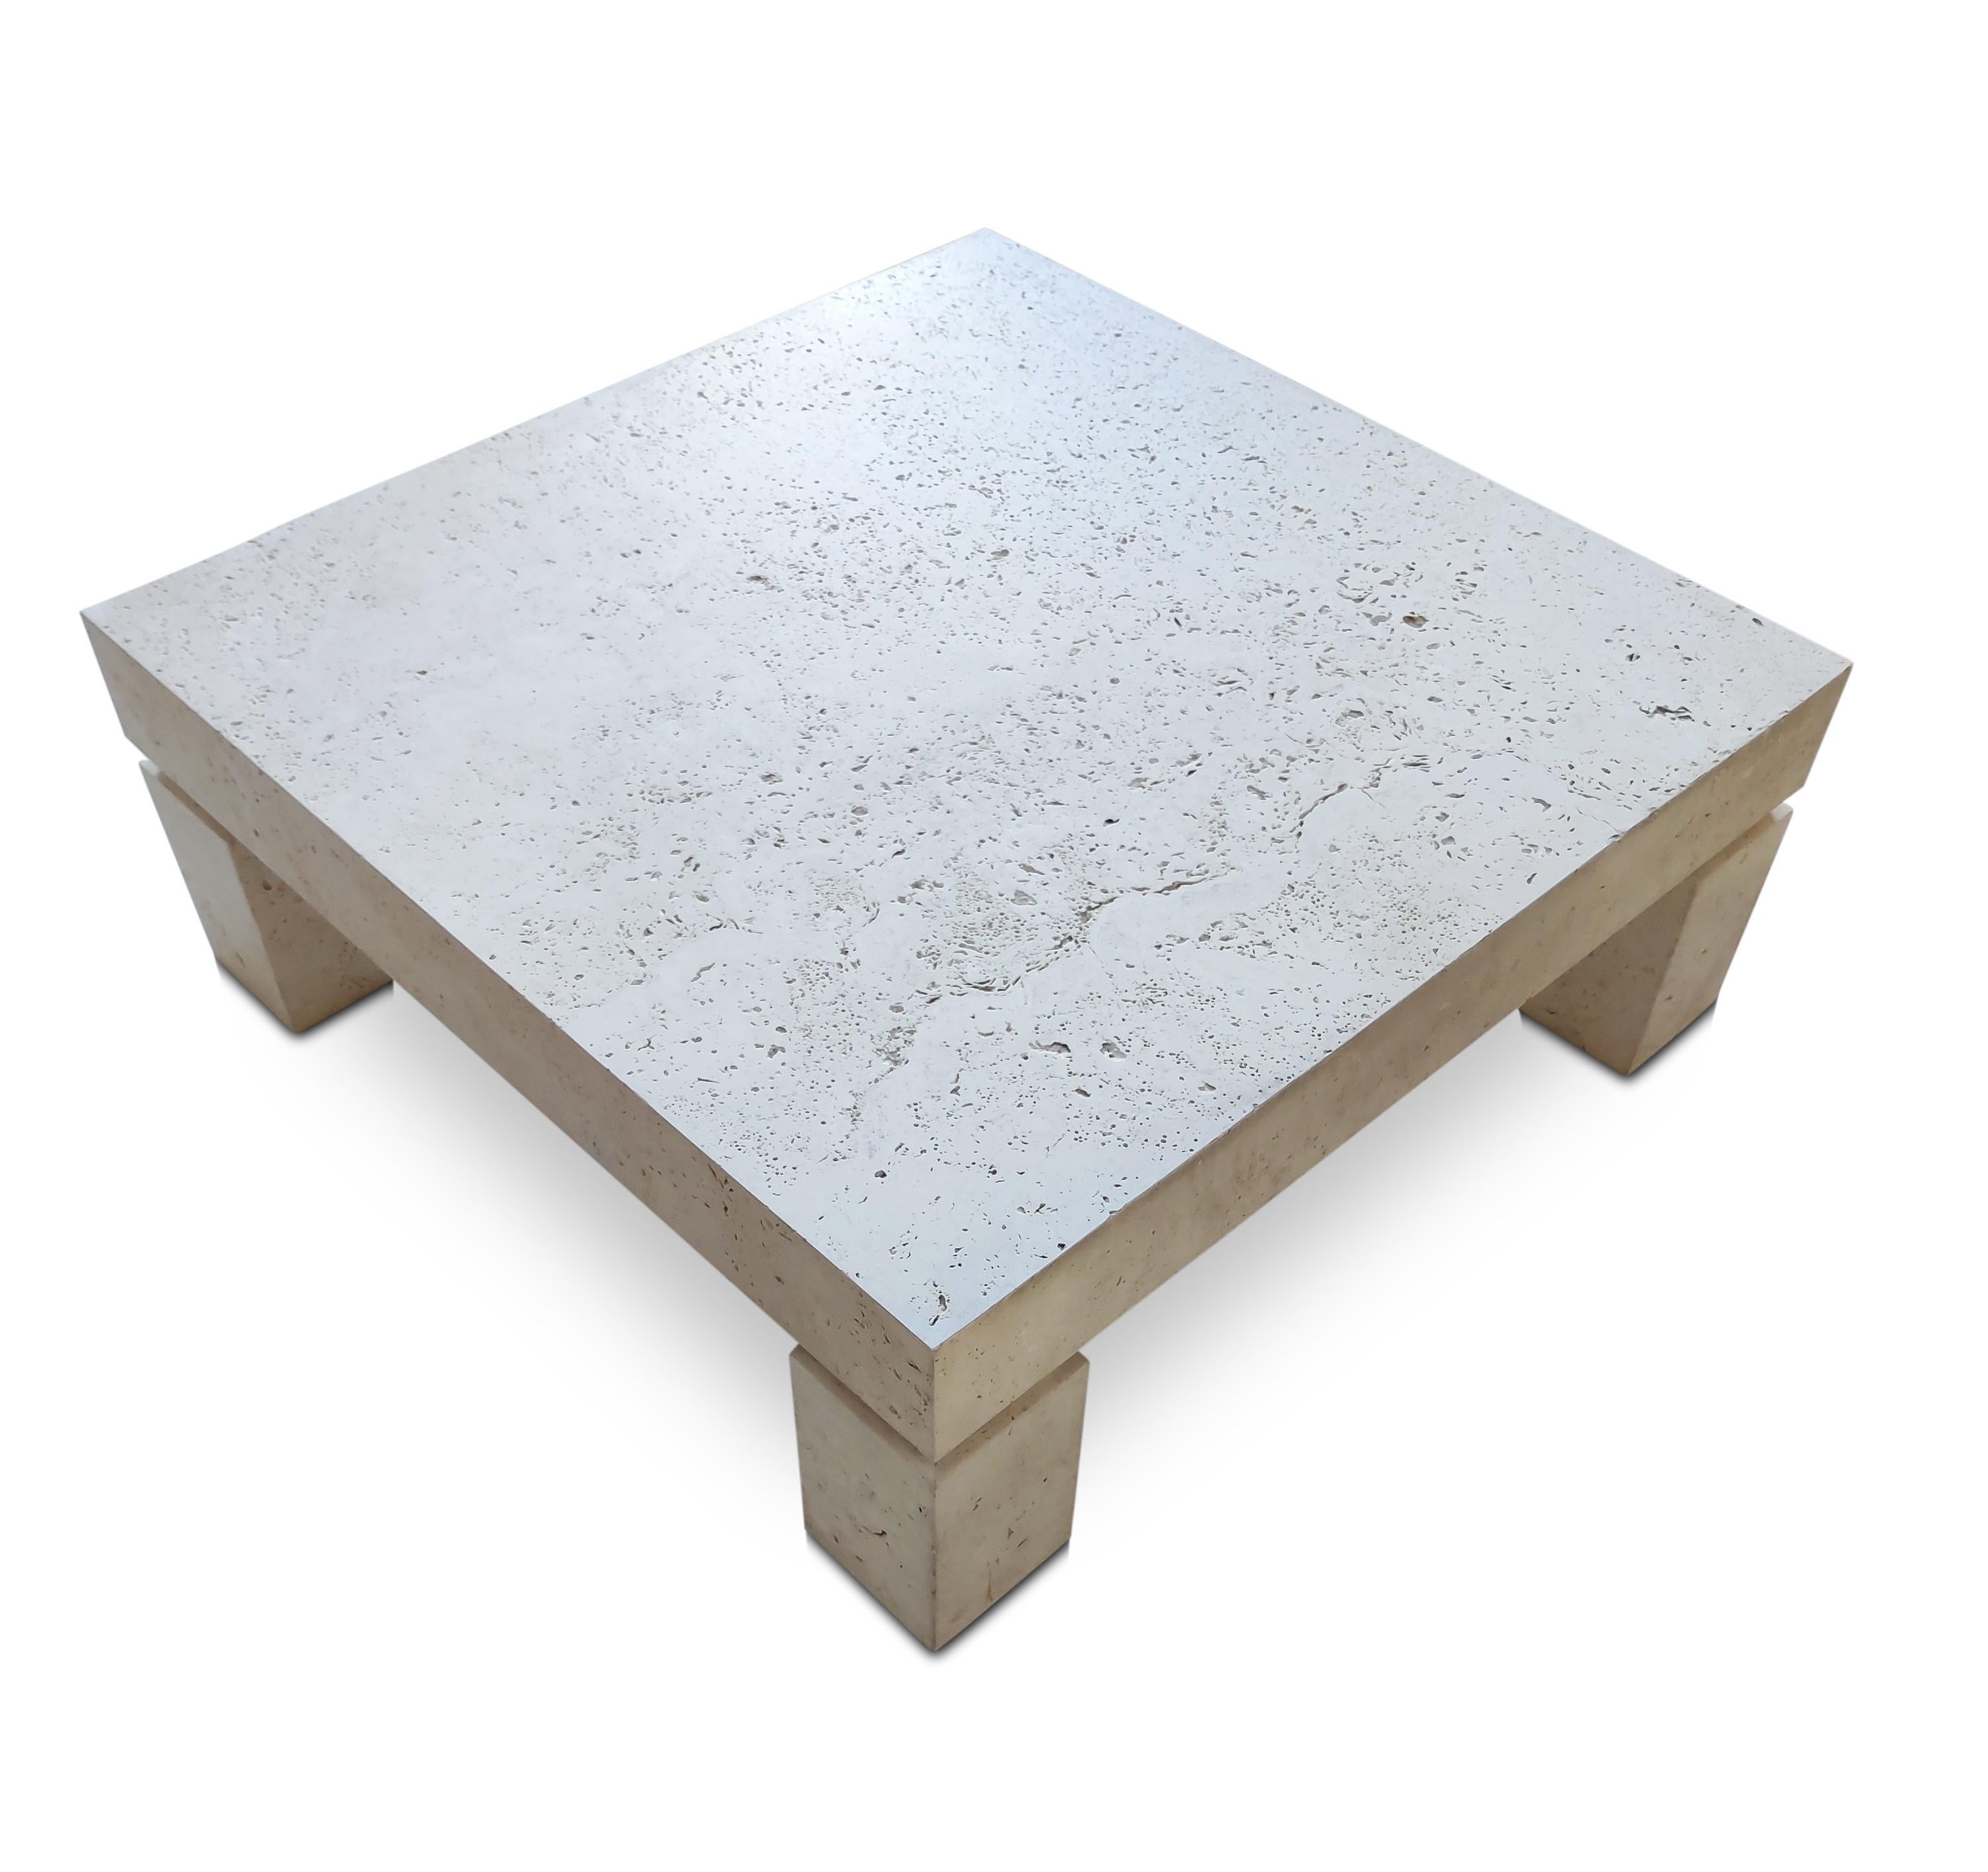 Probablement conçue et fabriquée par Stone International en Italie vers les années 1980, cette table basse en travertin naturel a une présence étonnante. Le plateau et les pieds ont une construction épaisse et solide, ce qui donne ce que j'appelle